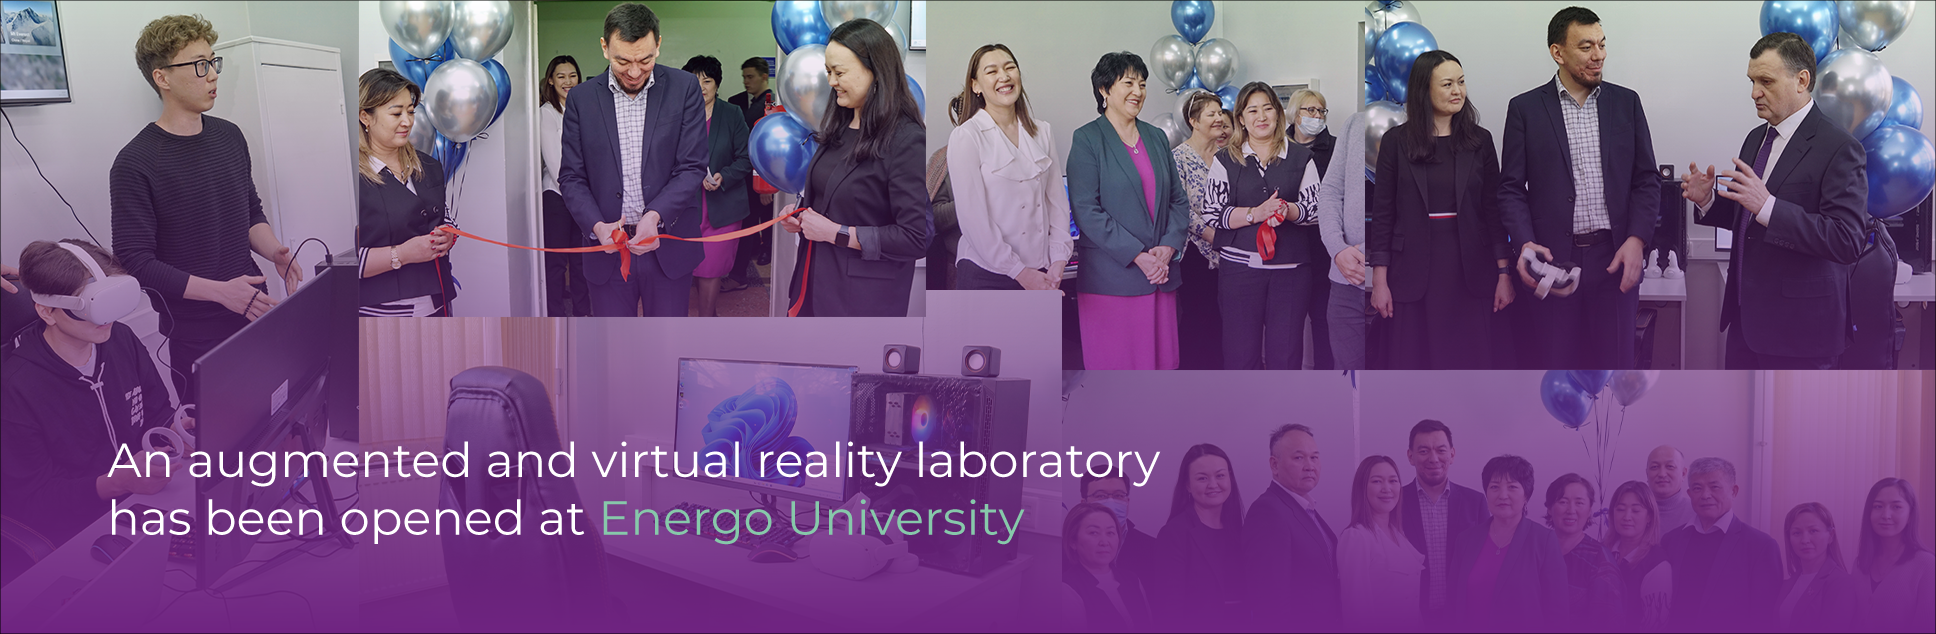 В Energo University открылась лаборатория дополненной и виртуальной реальности